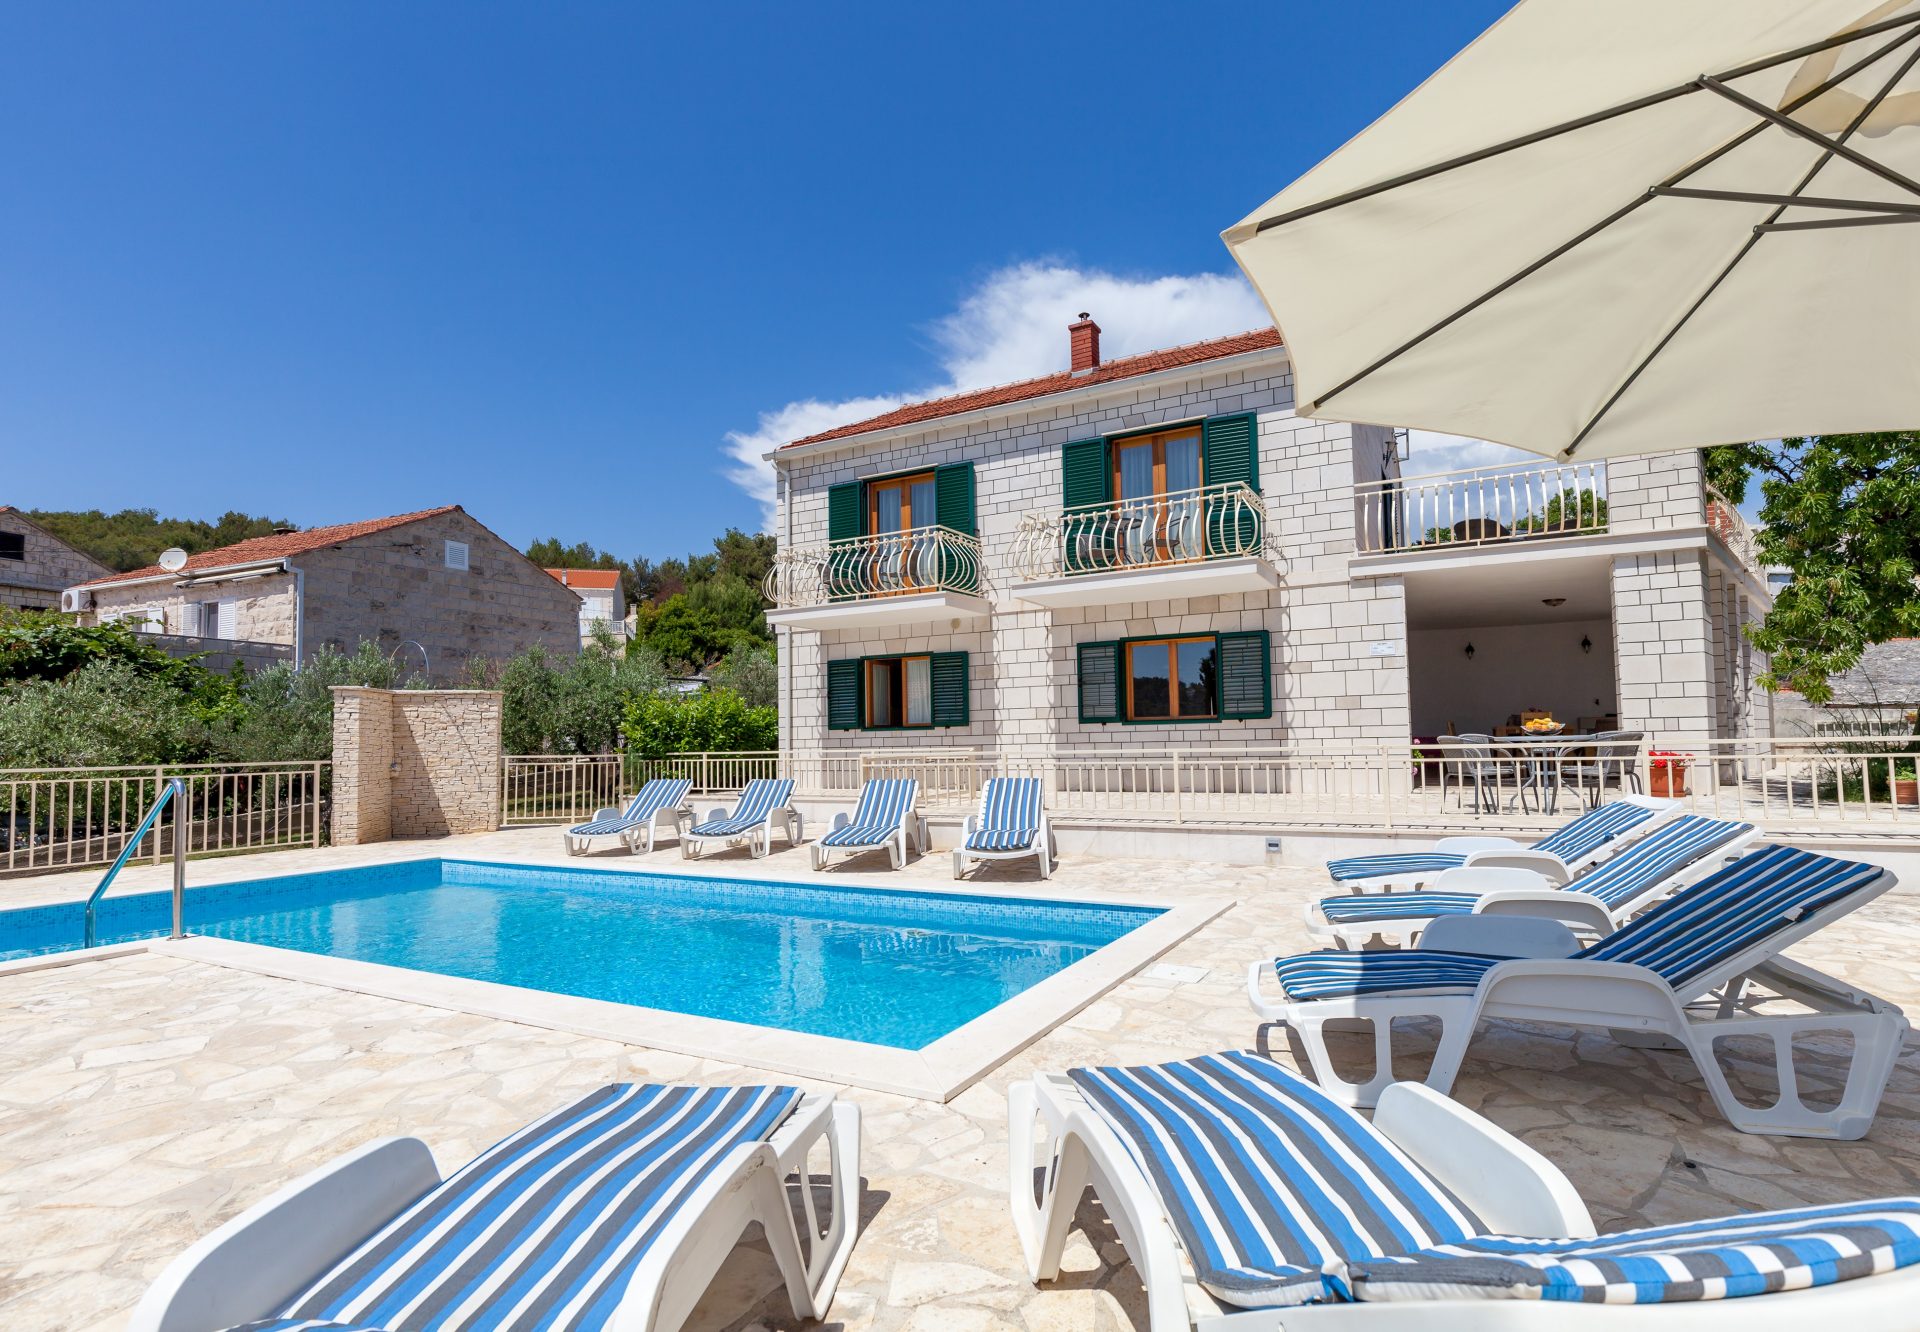 Villa Vjeka with a private pool in Croatia for rent